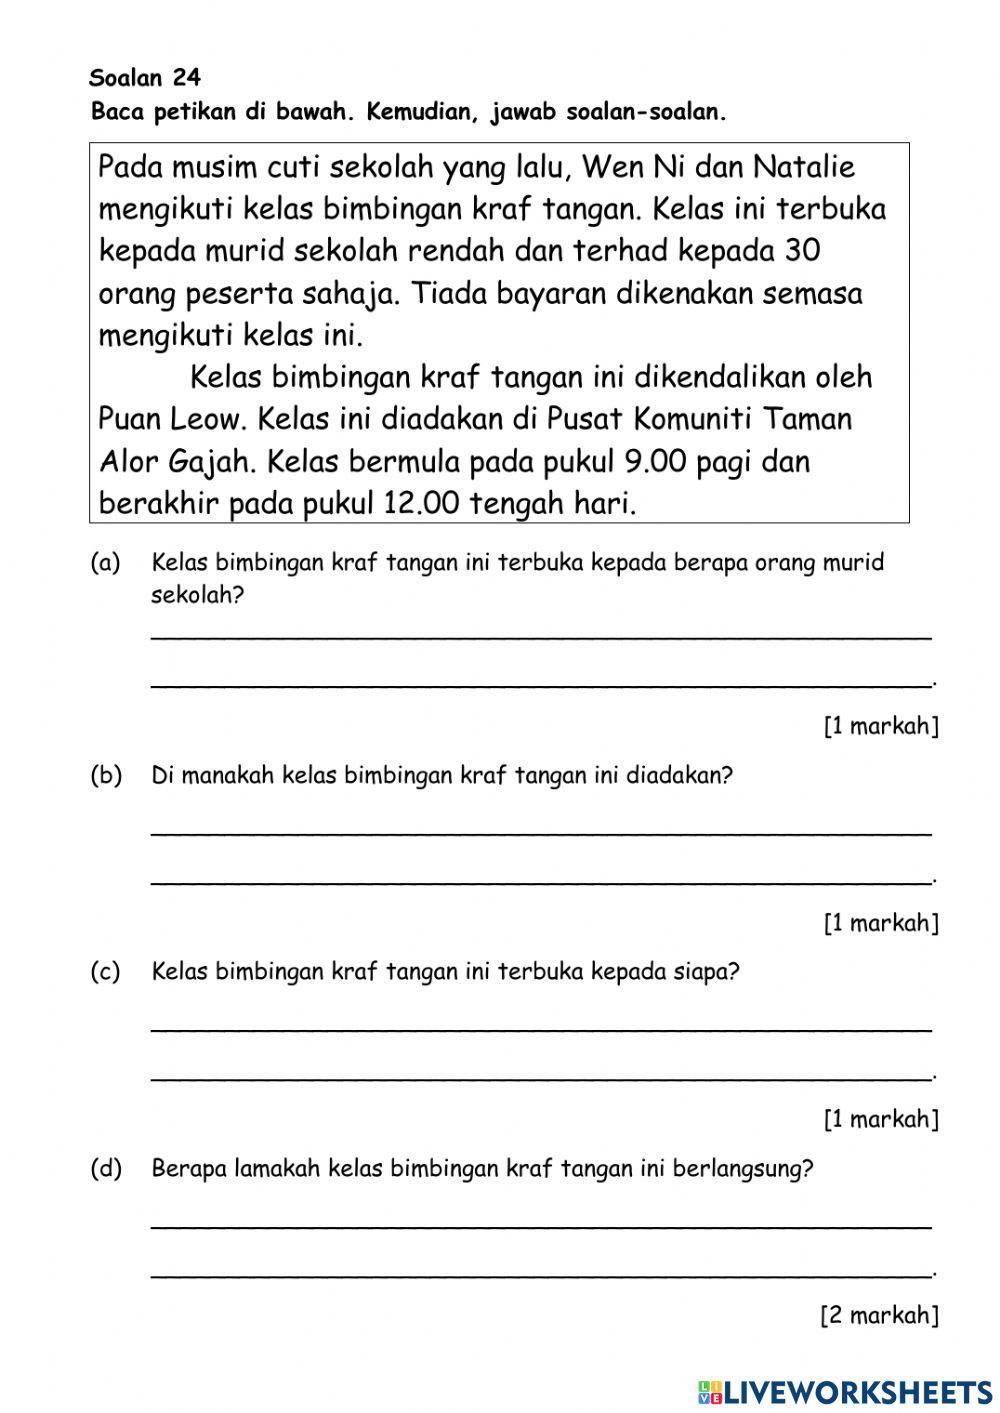 Pentaksiran Bahasa Melayu Tahun 4 (1)